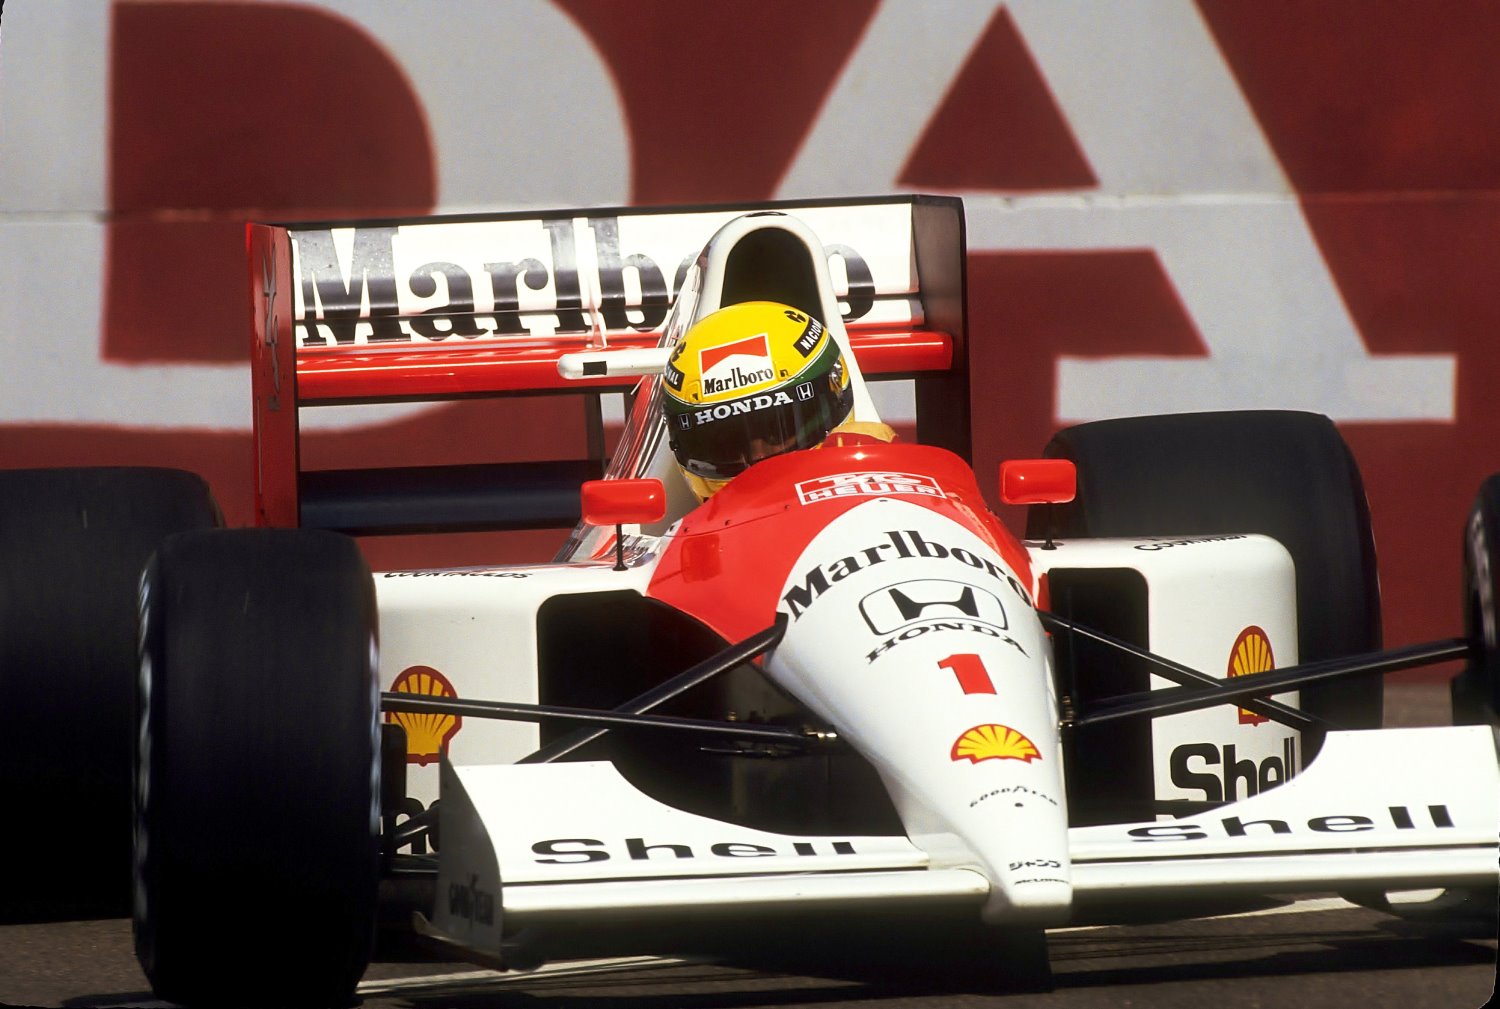 Senna in the 1991 McLaren